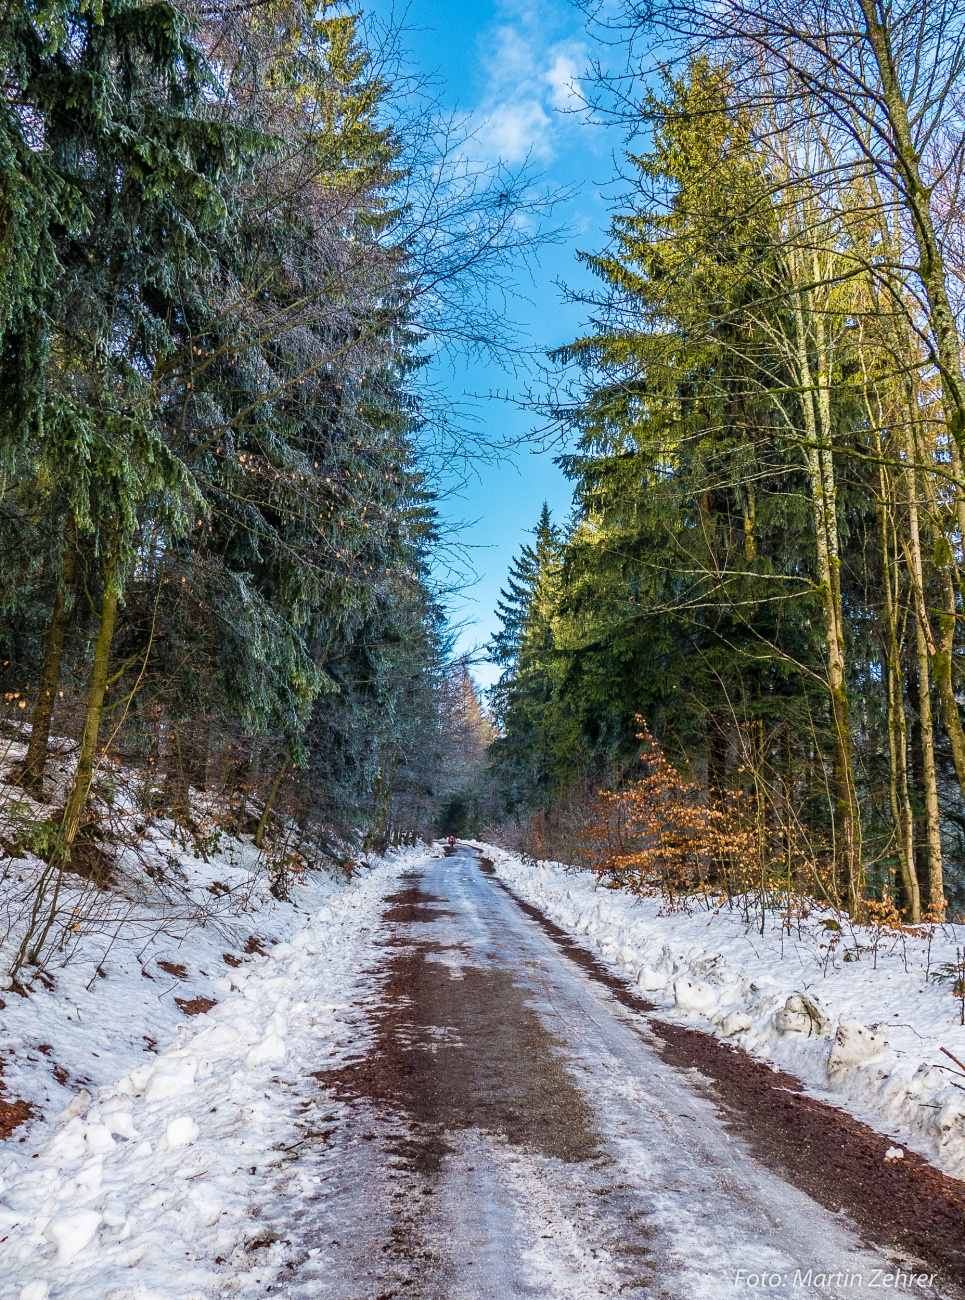 Foto: Martin Zehrer - Los gehts! Winter-Wanderung durch den Steinwald bis zum Waldhaus. Dort im Waldhaus gibts gute Brotzeiten und man kann sich speziell im Winter gut aufwärmen. 